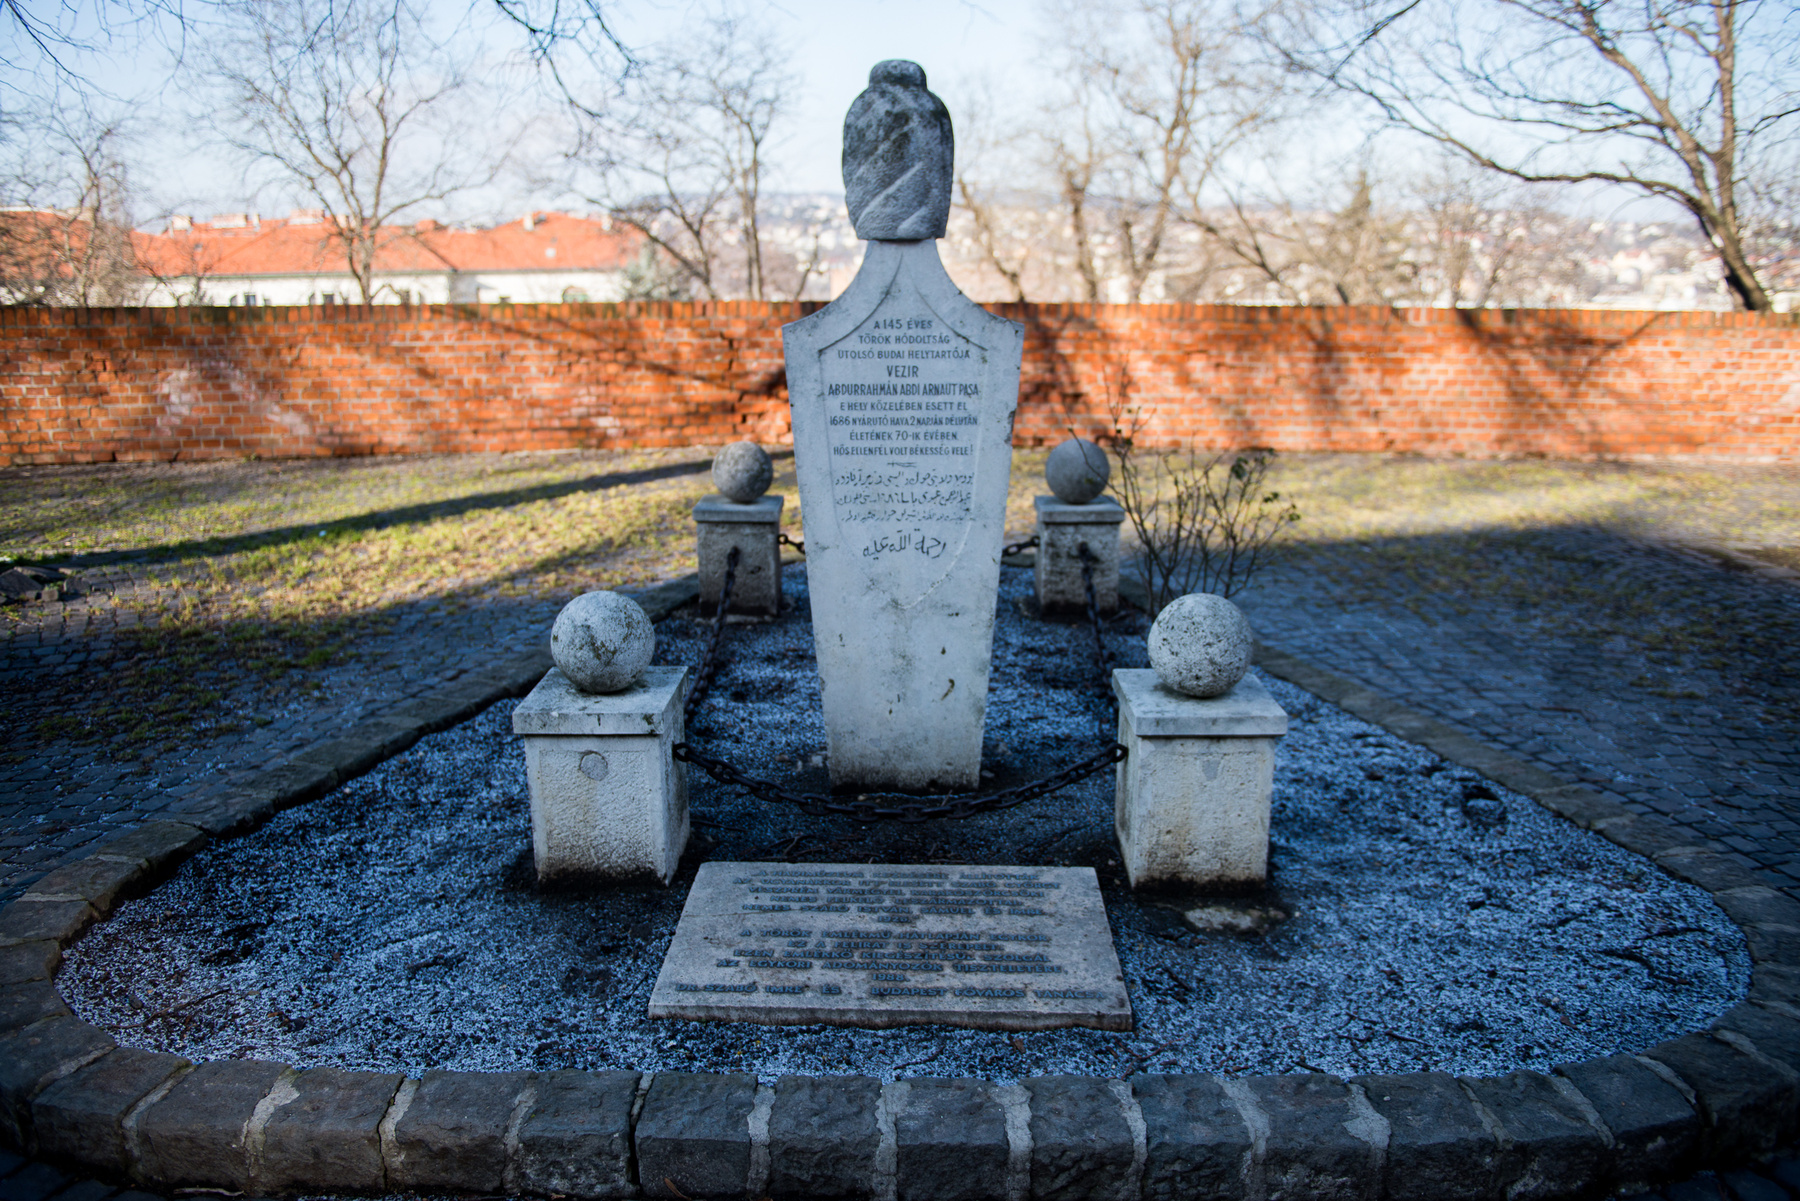 A mostani tízemeletes ház helyén volt a zsidó temető, ami egészen a 18. századig használatban volt. Ide temették Werbőczy Istvánt is, mivel éppen járvány volt, és a városfalon belül nem lehetett temetkezni. 